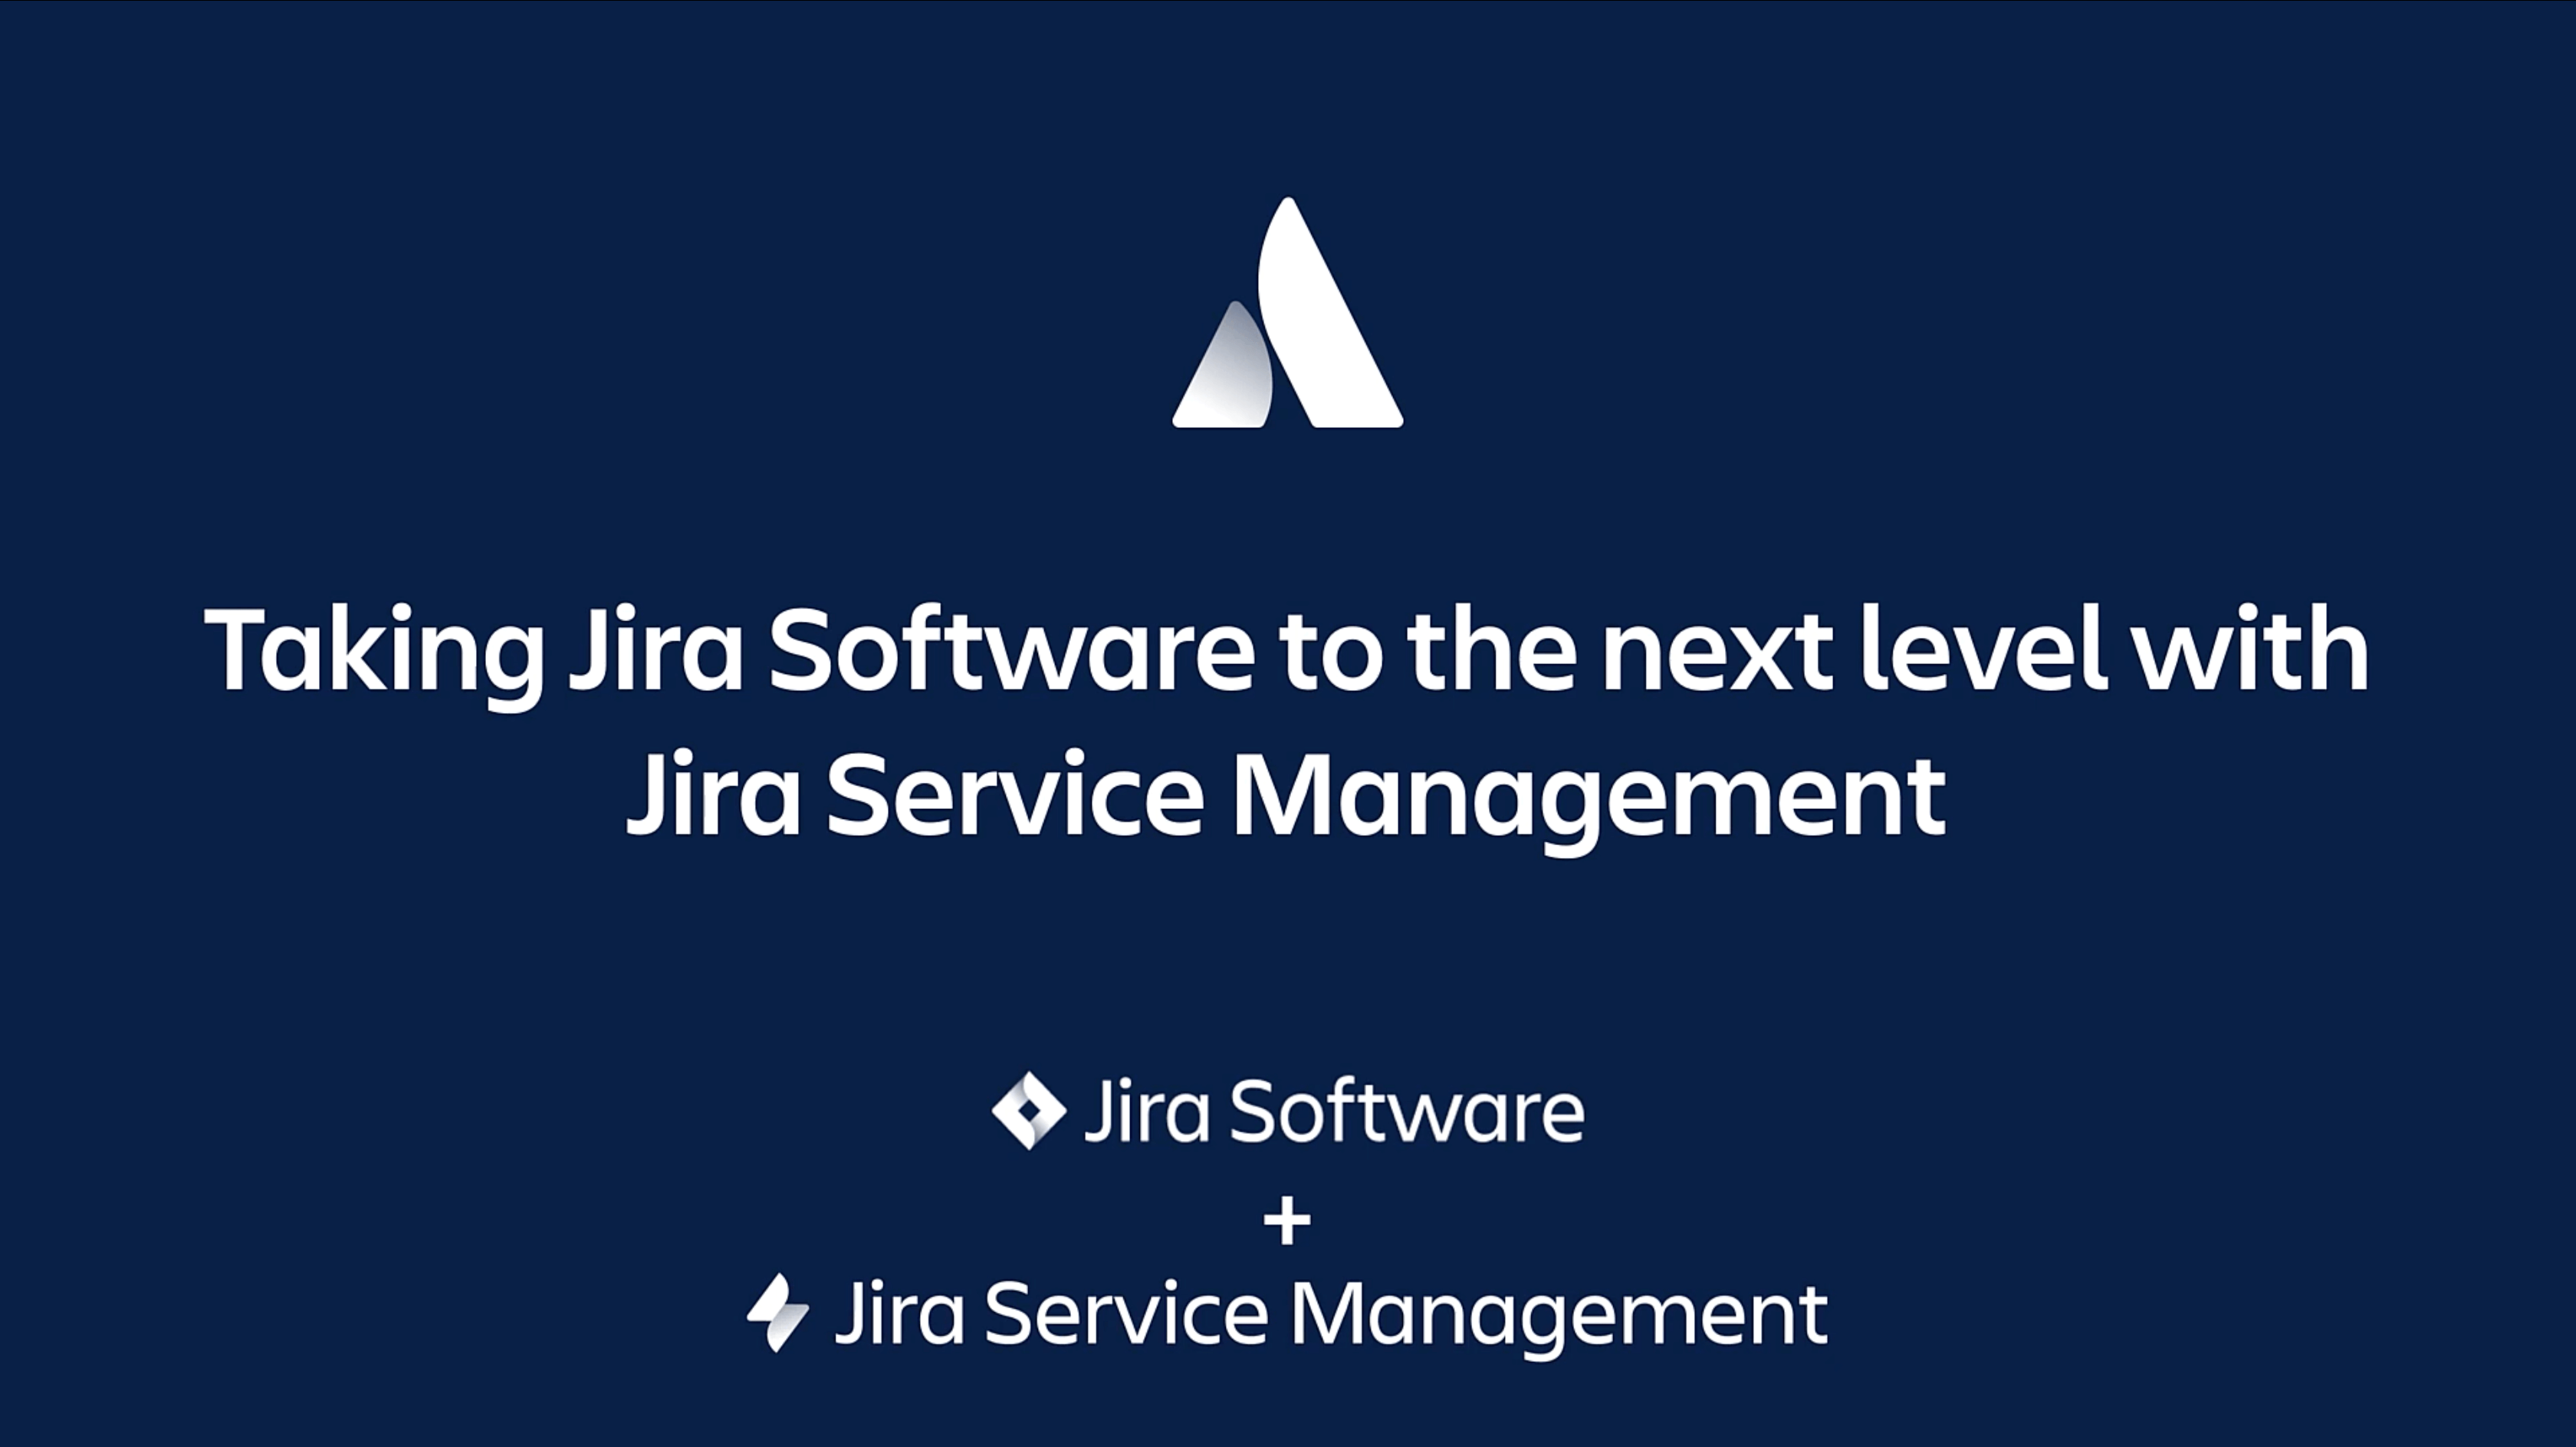 通过 Jira Service Management 进一步发展 Jira Software